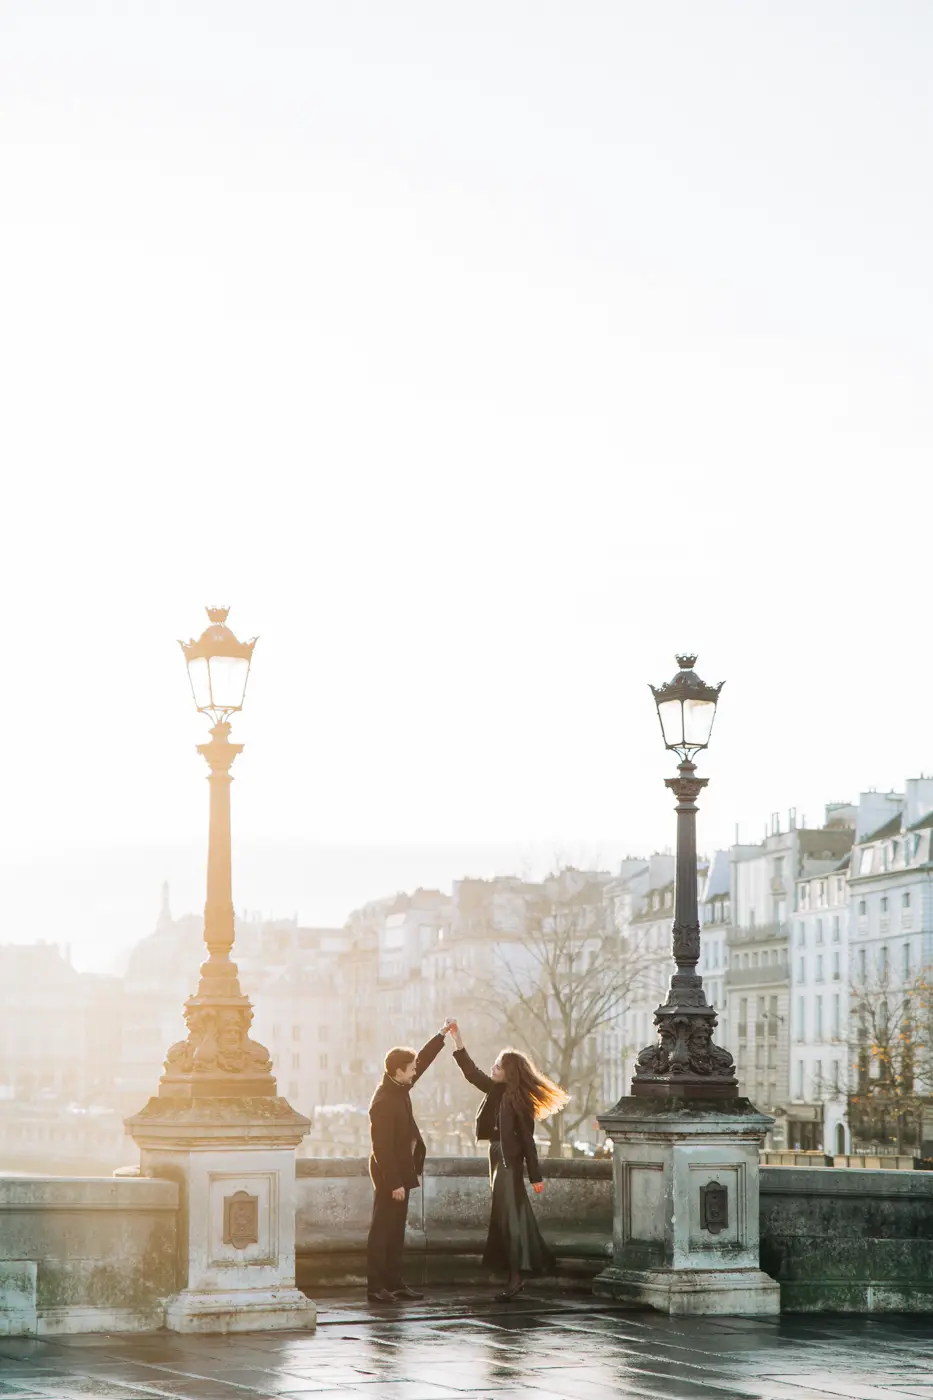 City of Light romance: Love blossoms against Paris's architectural gems